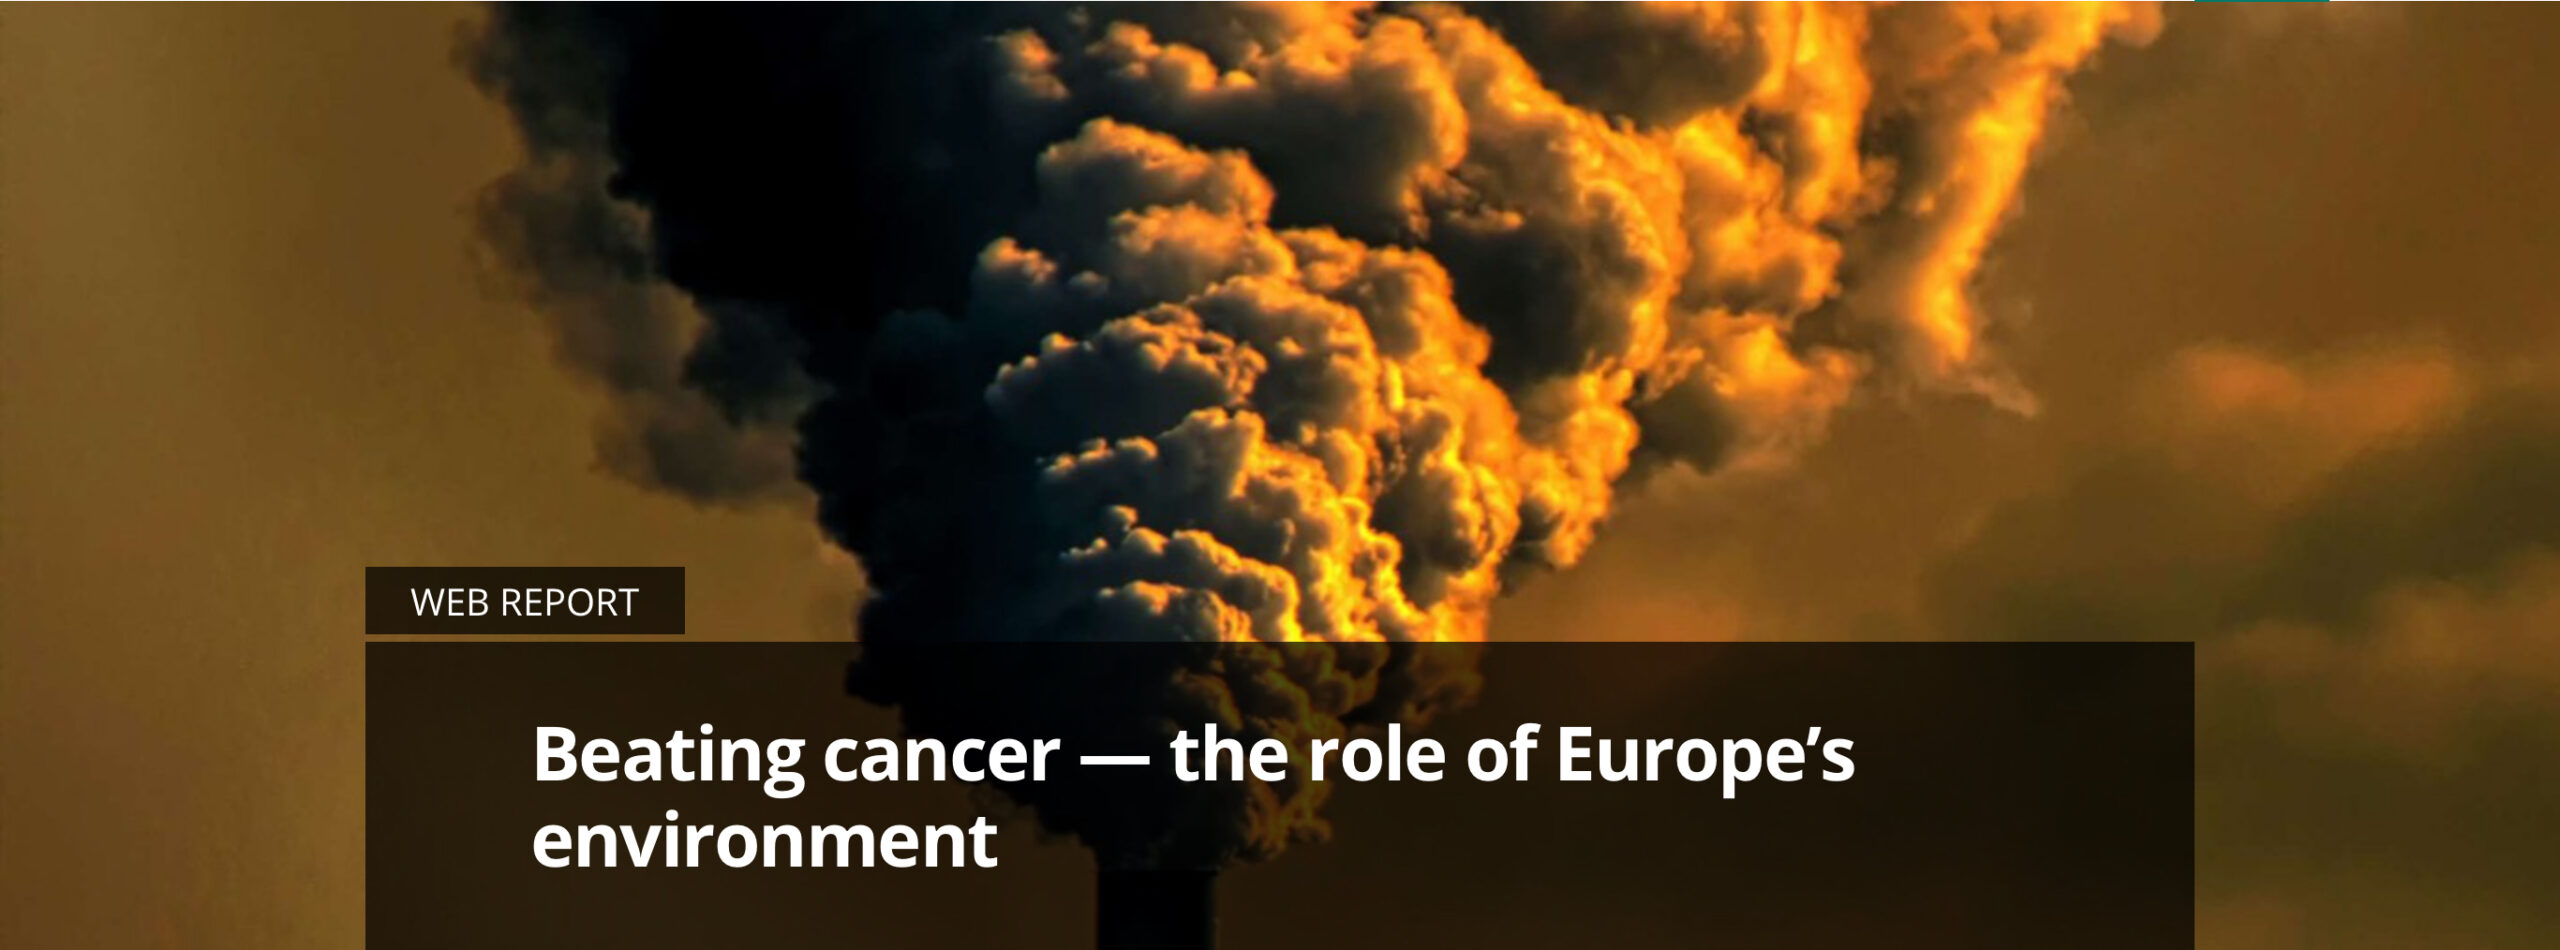 Aumentano i tumori, in Italia la più elevata mortalità per cancro si registra là dove è maggiore l’inquinamento (atmosferico ed ambientale)